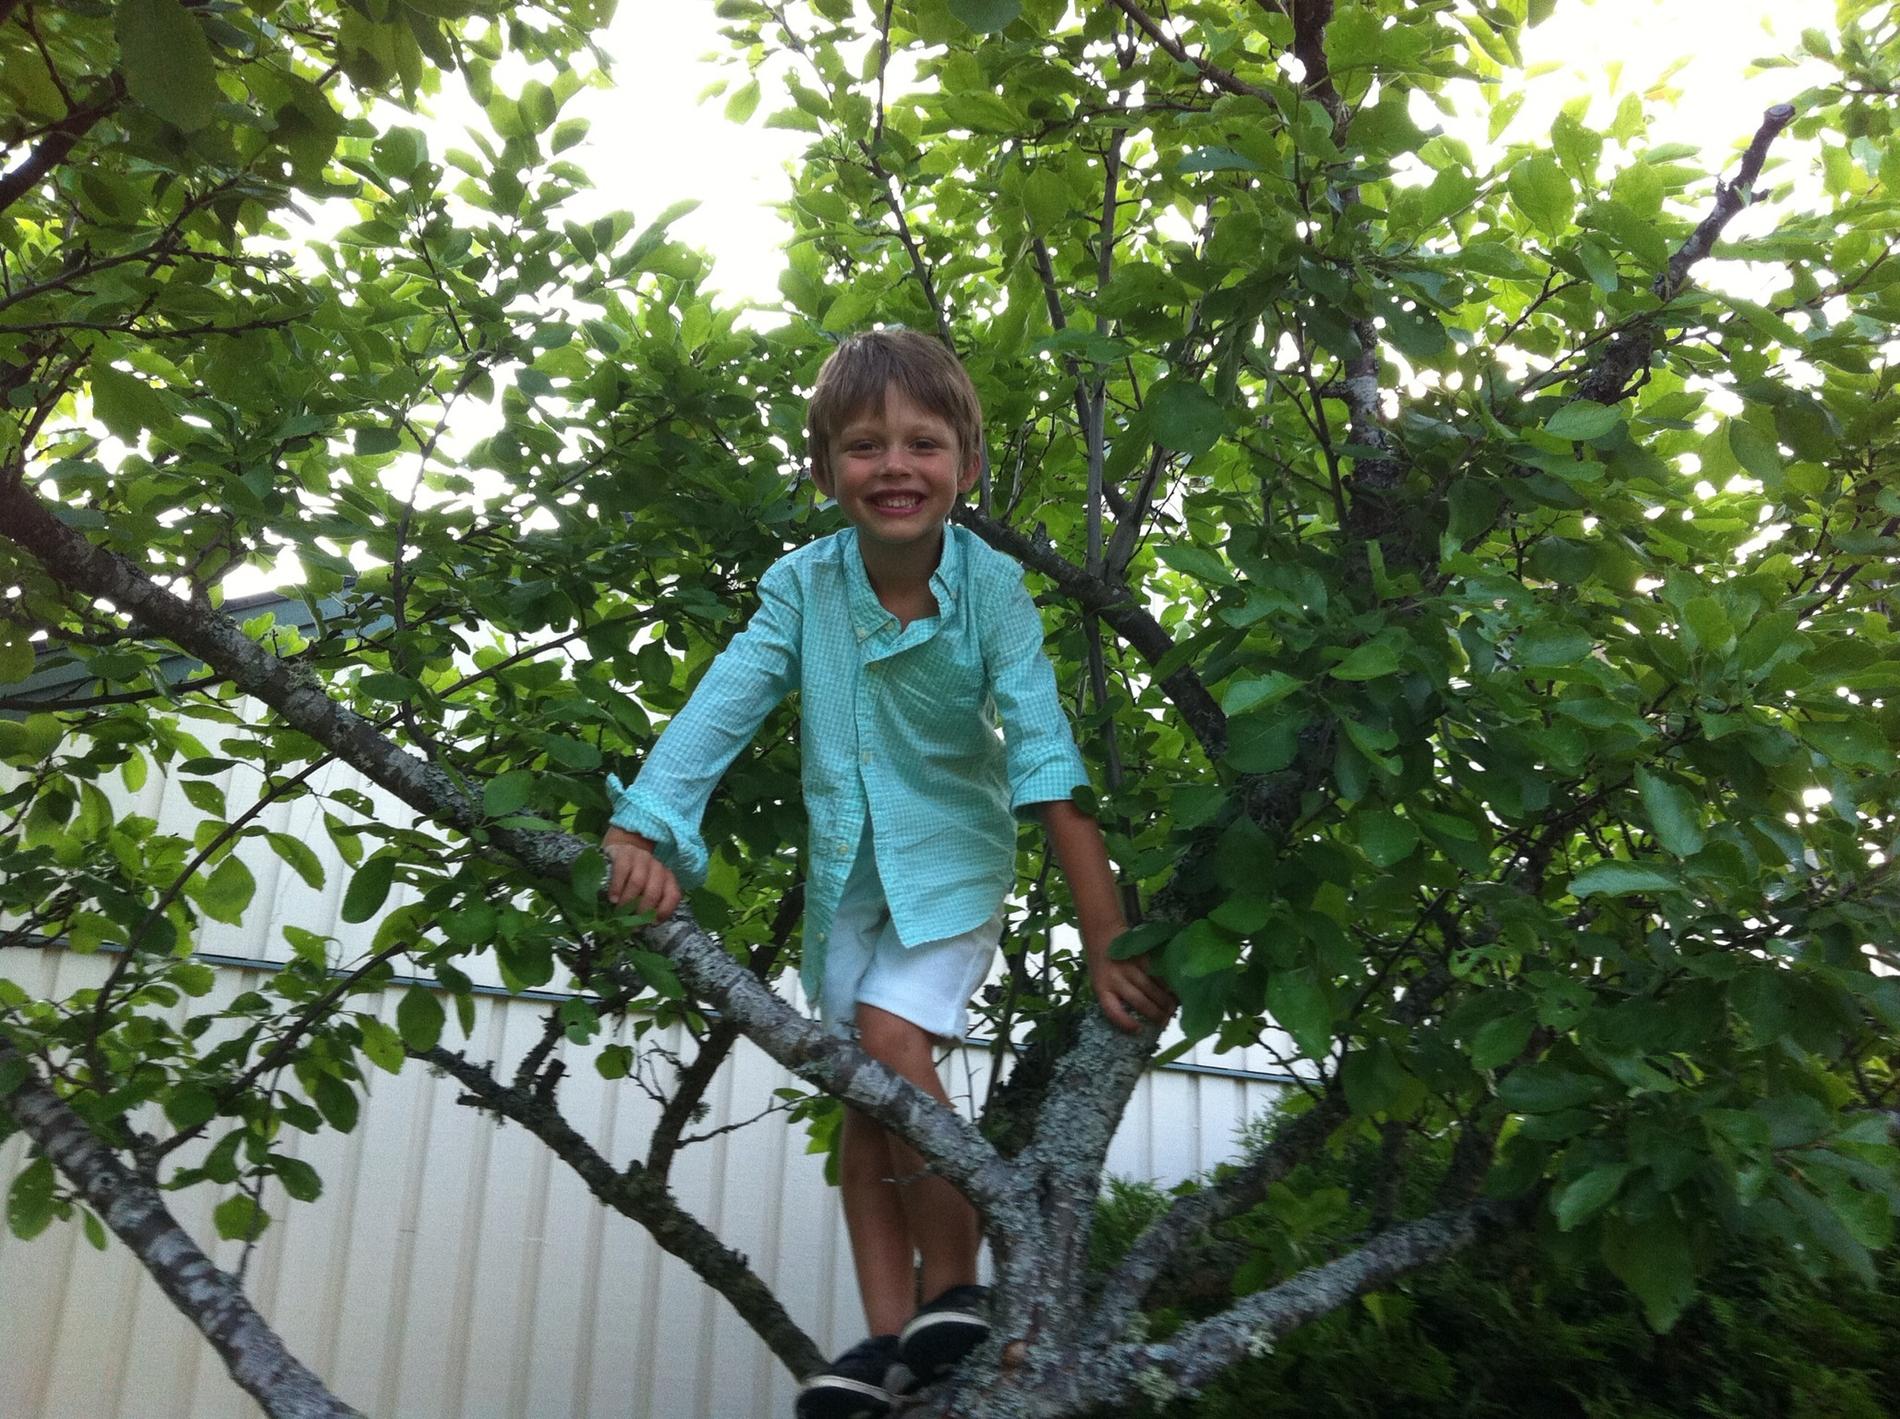 Kevin i Kalmar njuter av sommarkvällen uppflugen i ett träd